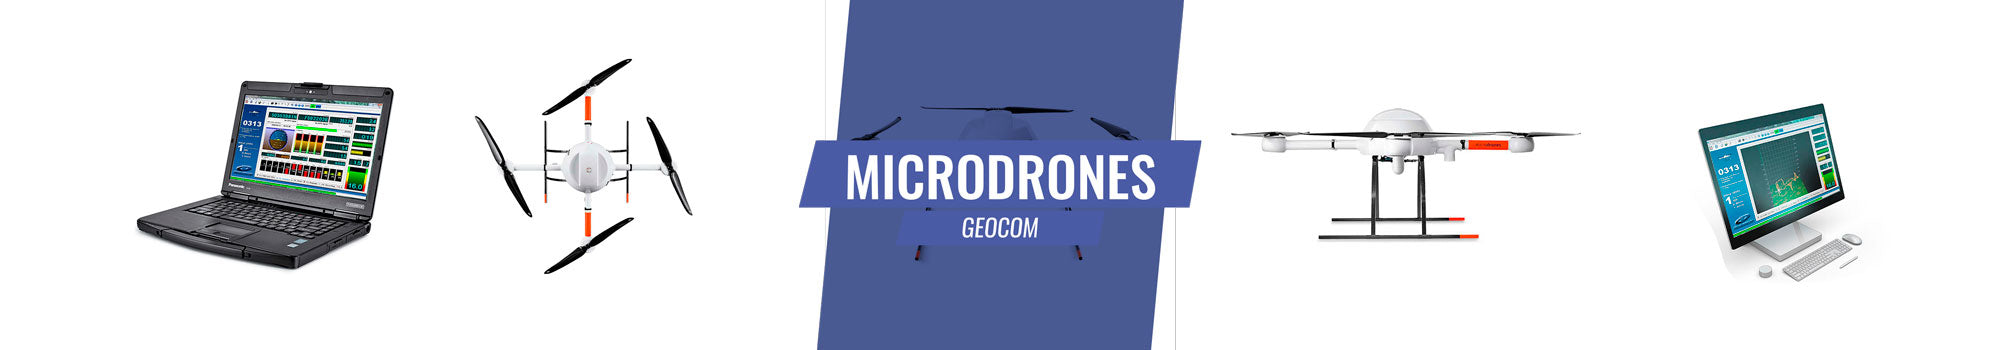 Microdrones